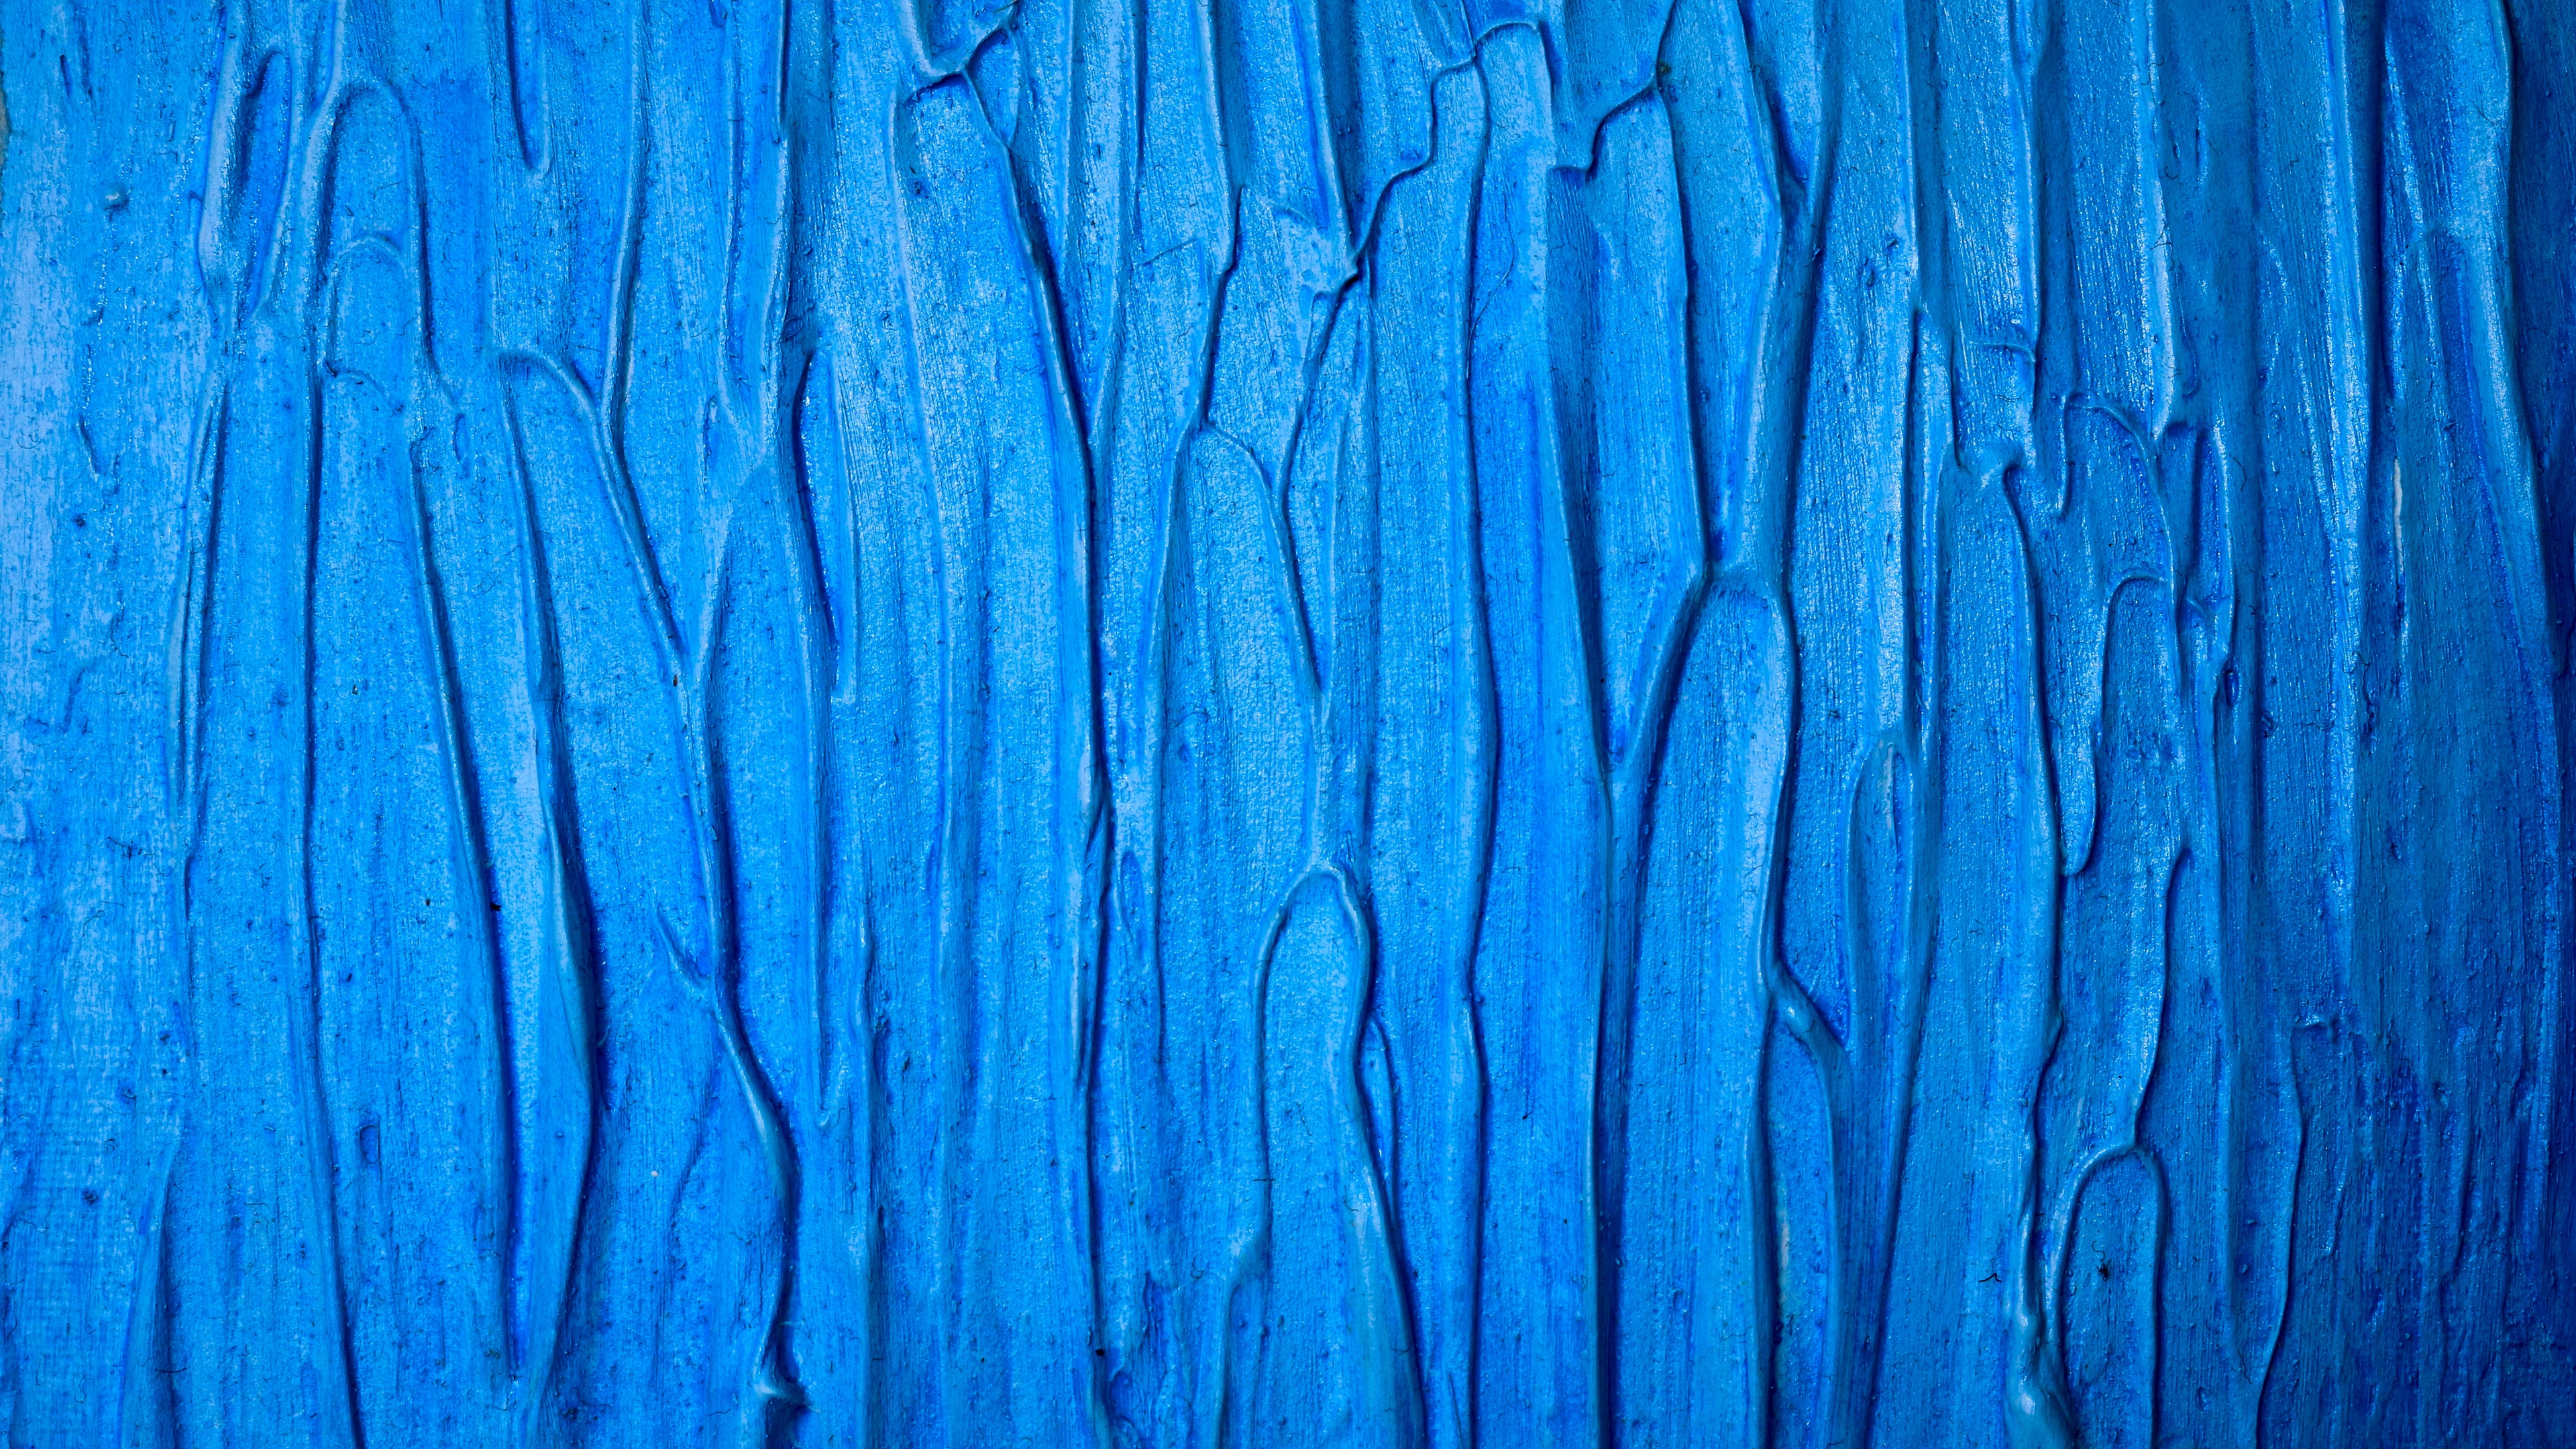 texture paint blue surface 4k 1536097877 - texture, paint, blue, surface 4k - Texture, Paint, blue